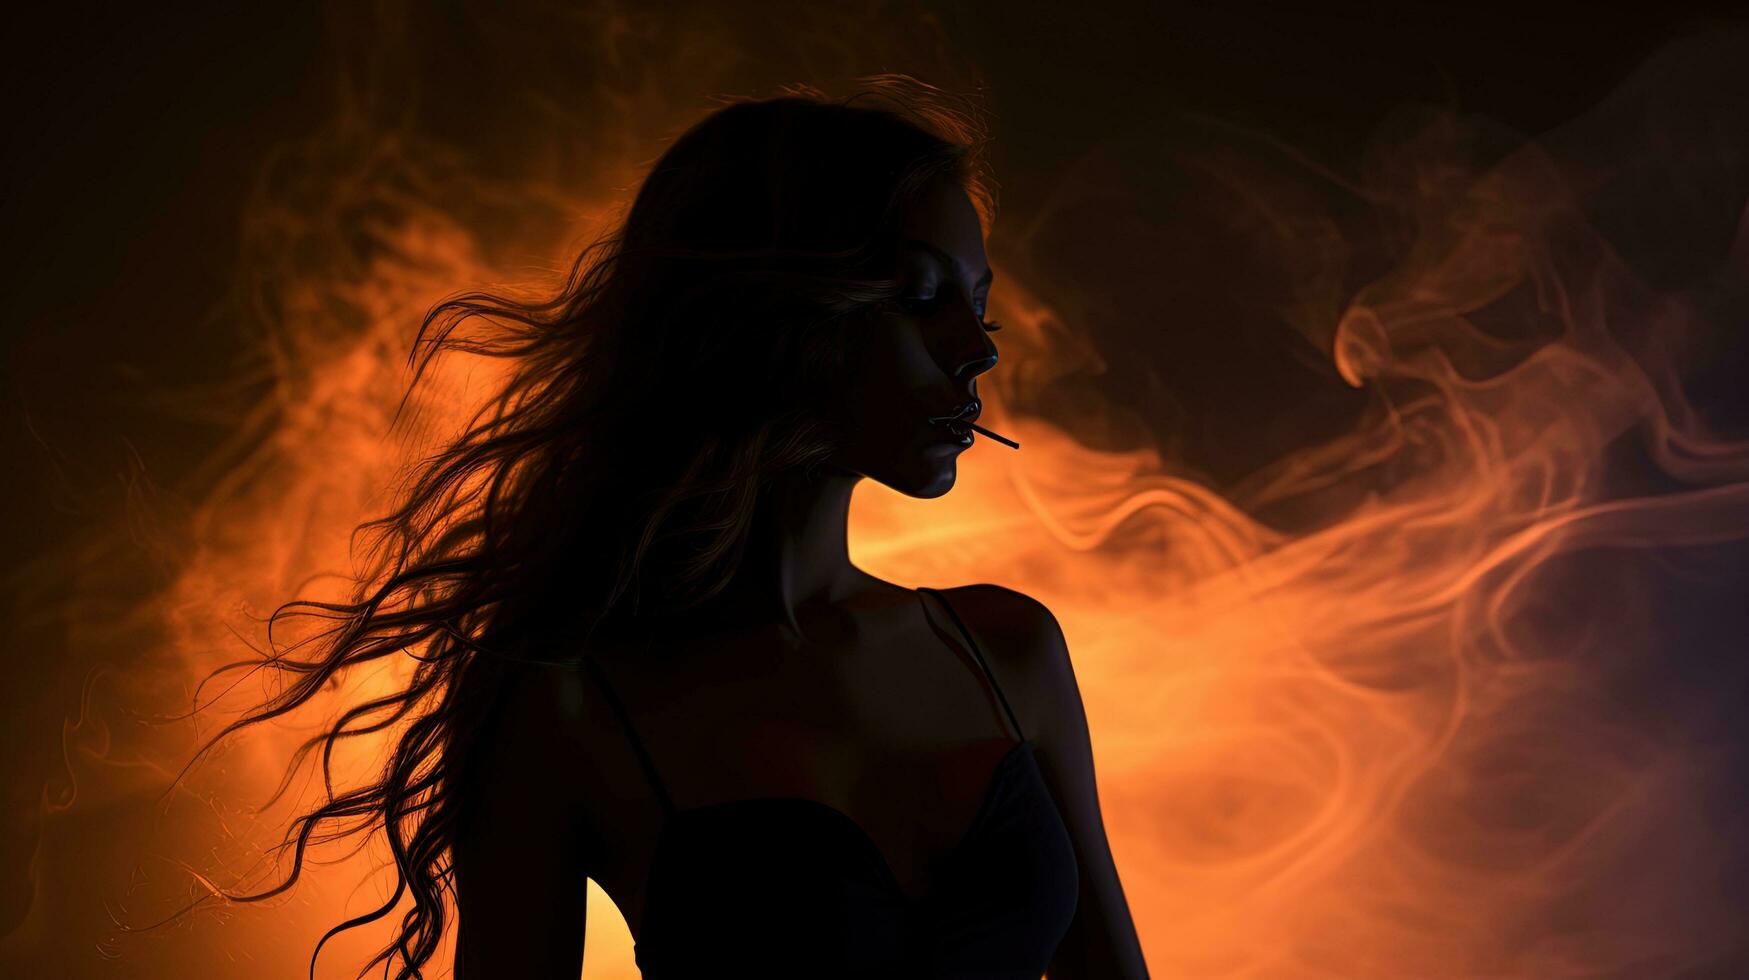 en fantastisk kvinna silhuett med lång hår upplyst förbi en blixt i de mörk är porträtterad i både full ansikte och profil med en rökig bakgrund foto